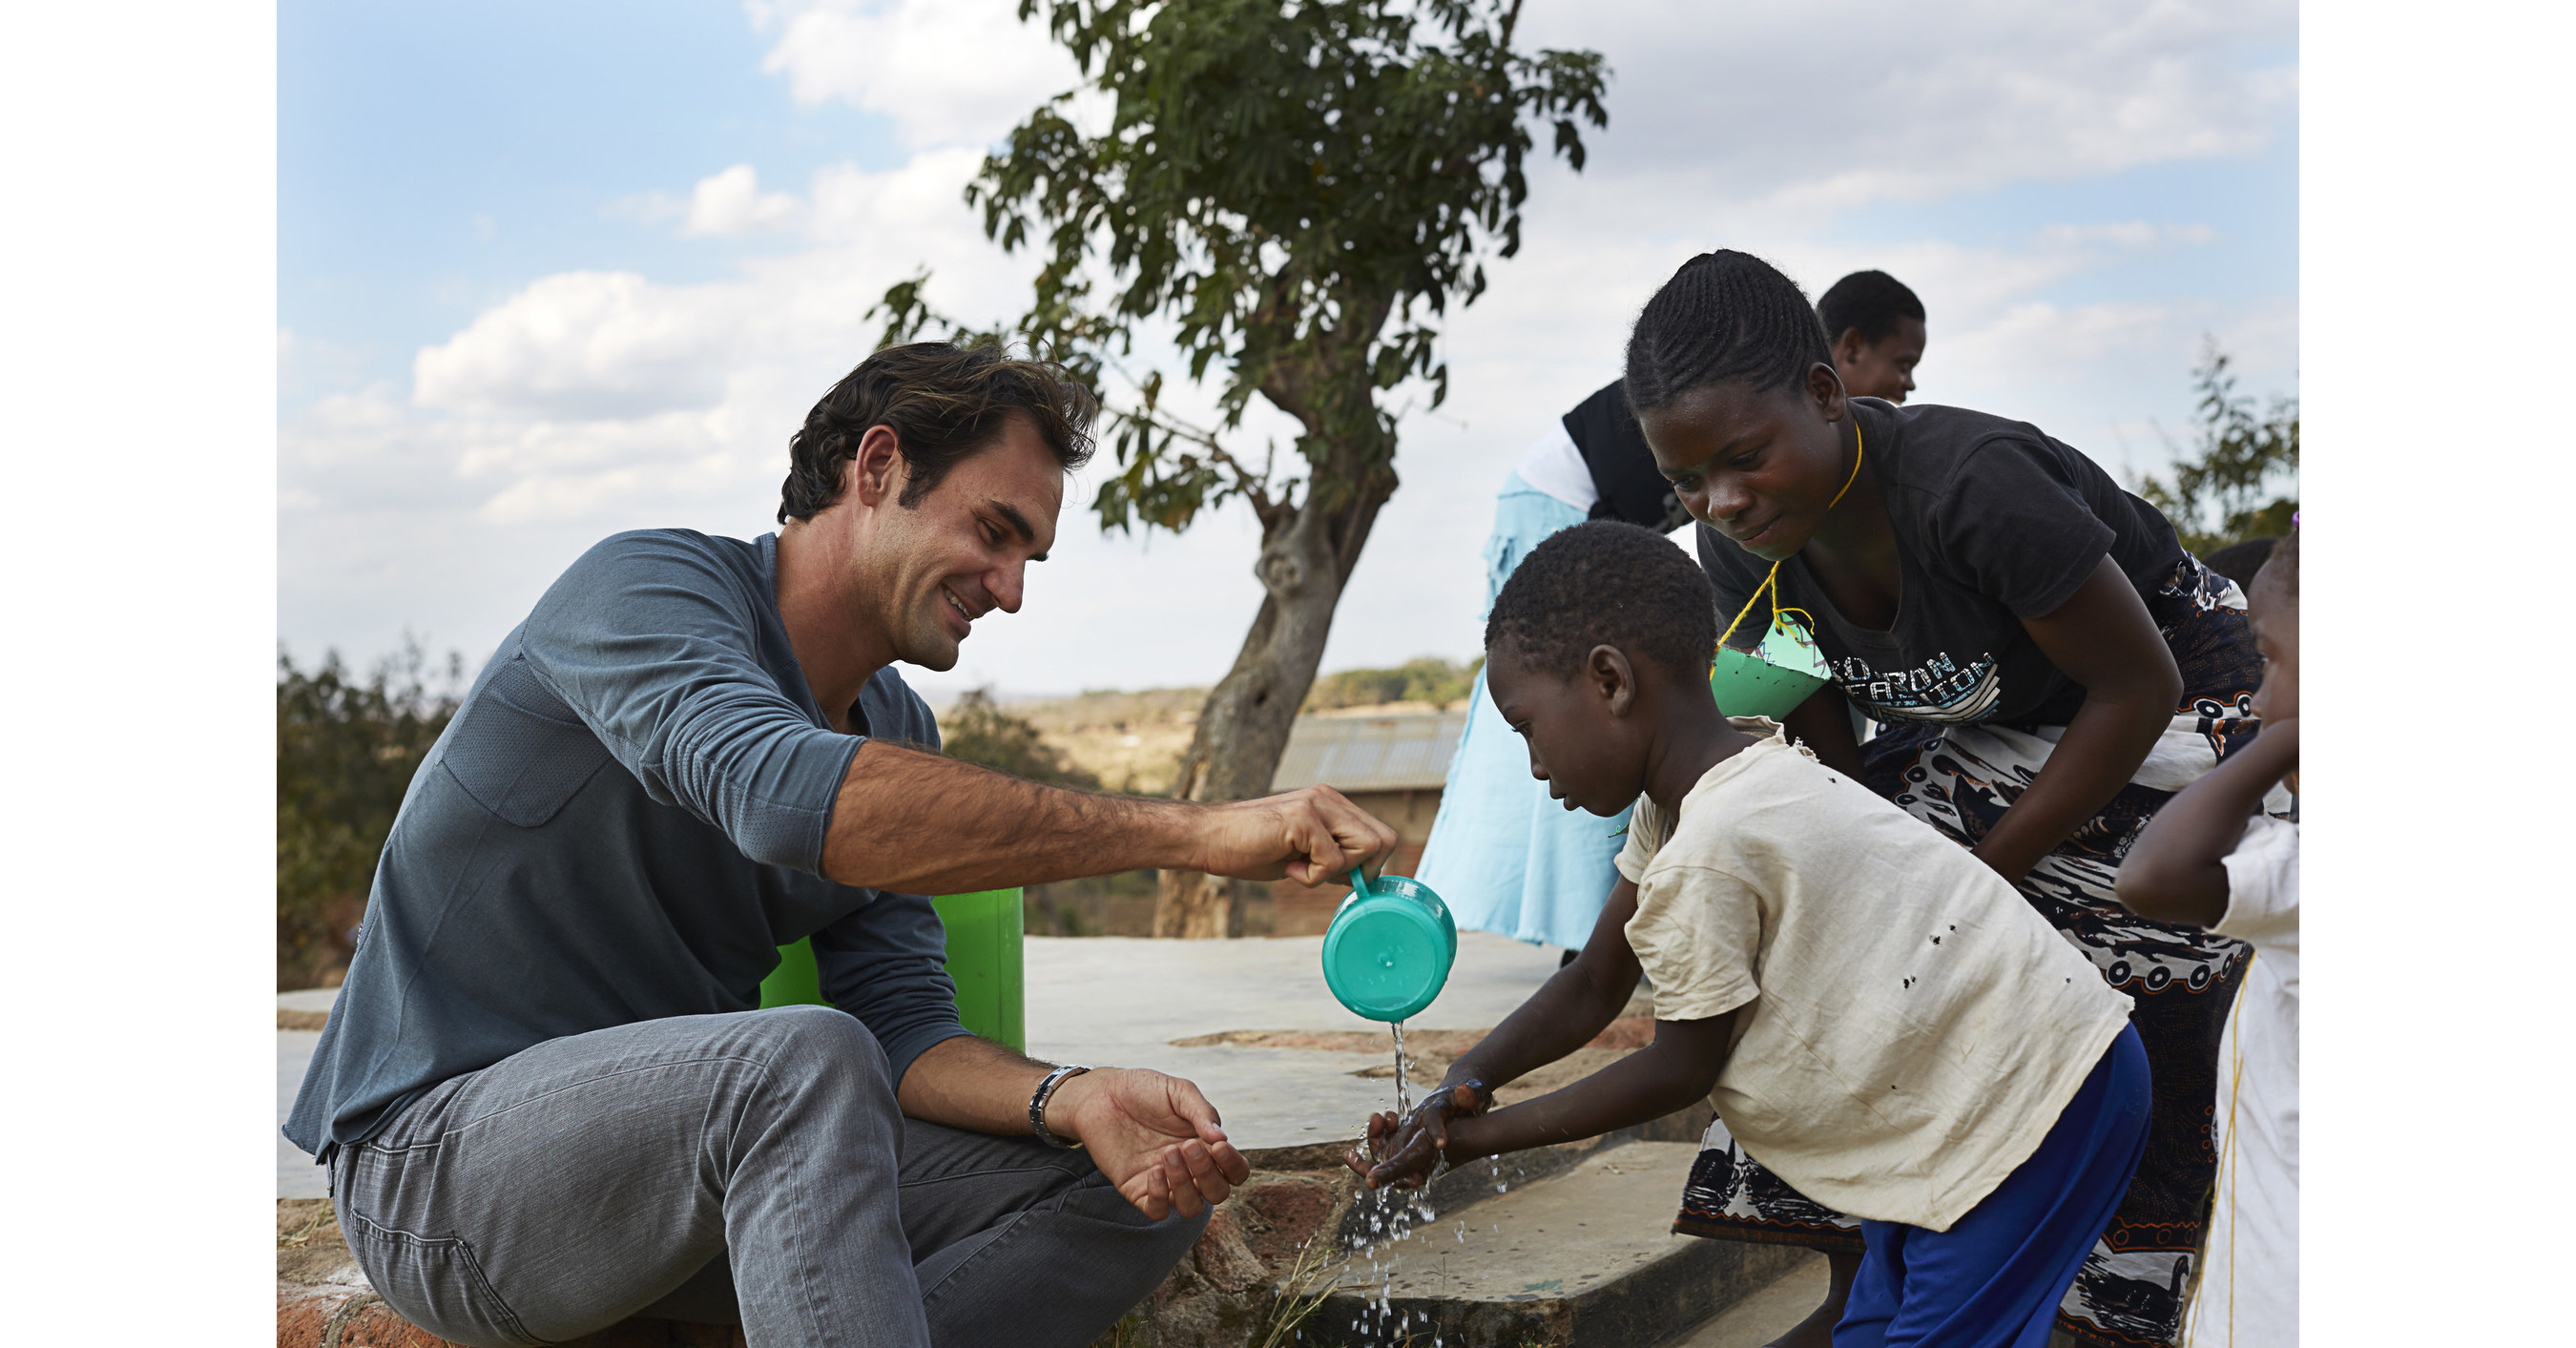 Волонтеры в африку. Роджер Федерер в Африка. Роджер Федерер благотворительность. Благотворительность в Африке. Волонтеры в Африке.